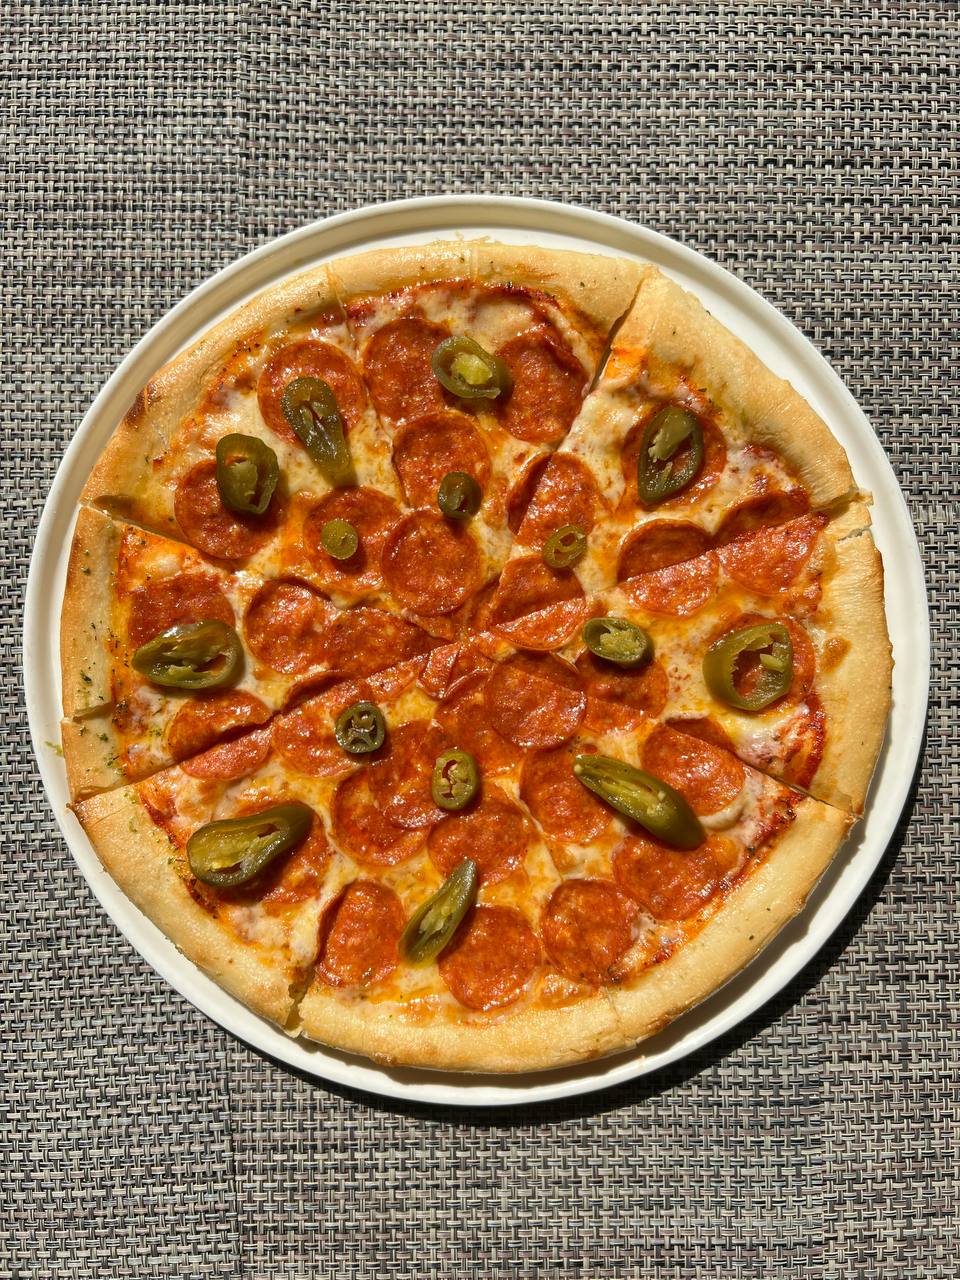 состав начинки для пиццы пепперони фото 34